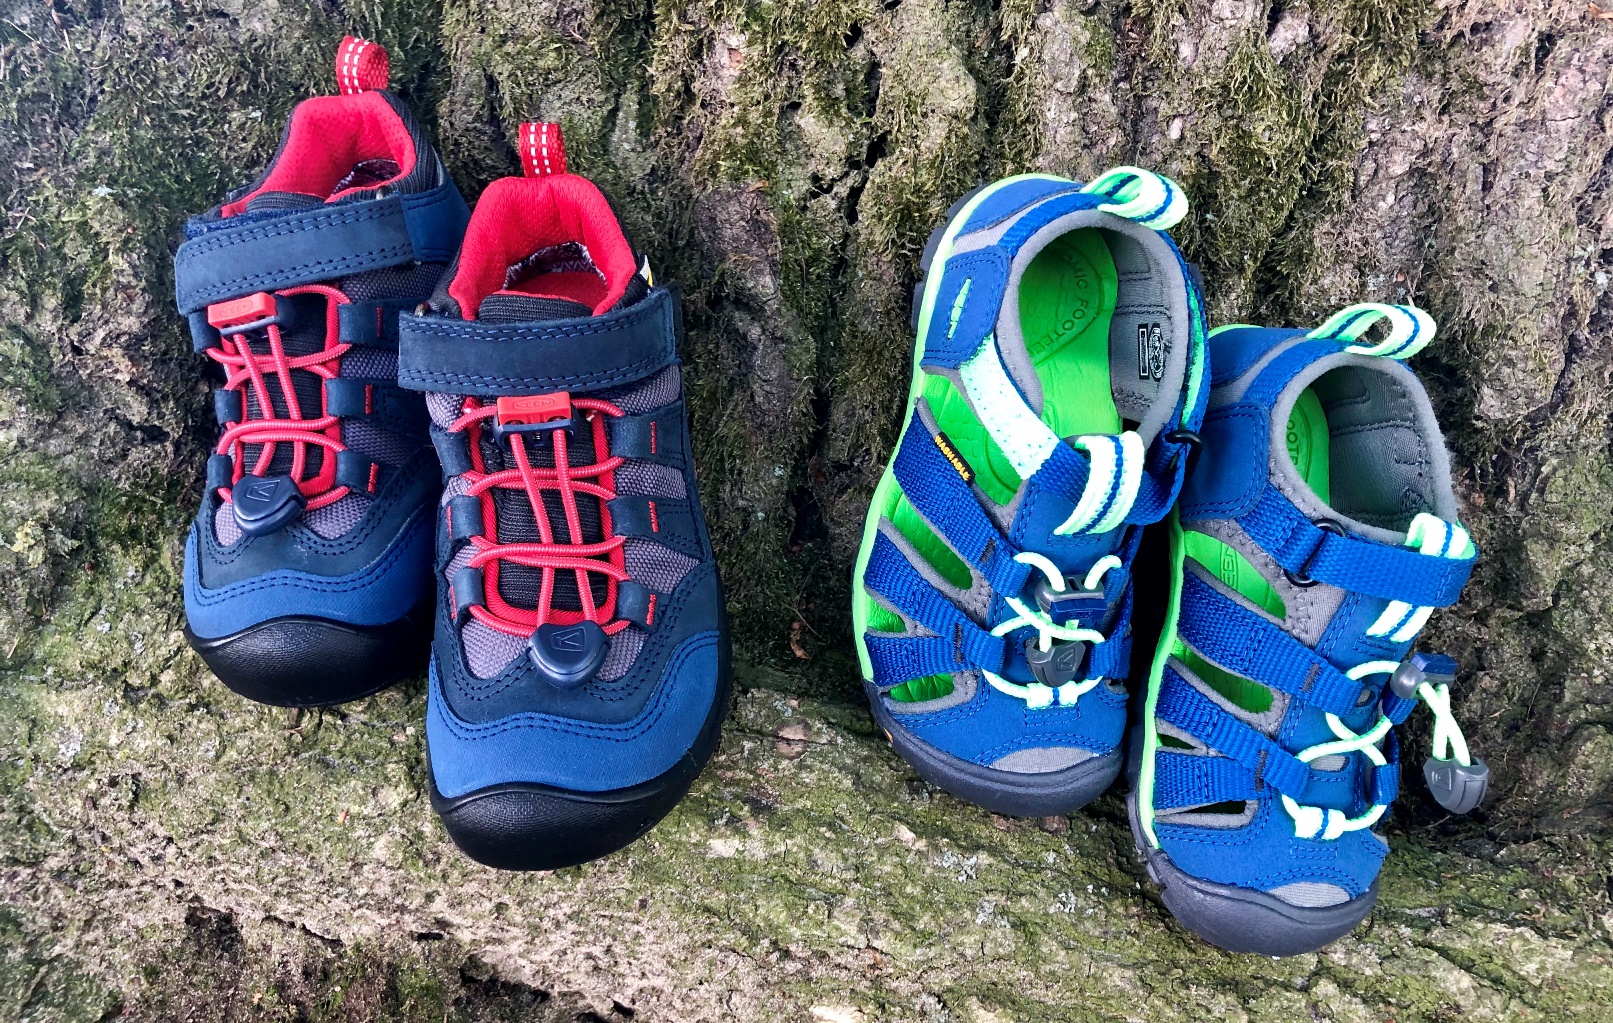 Foto 24.05.19 09 51 24 - Schritt für Schritt Richtung Sommer: Unsere neuen Schuhe von Keen